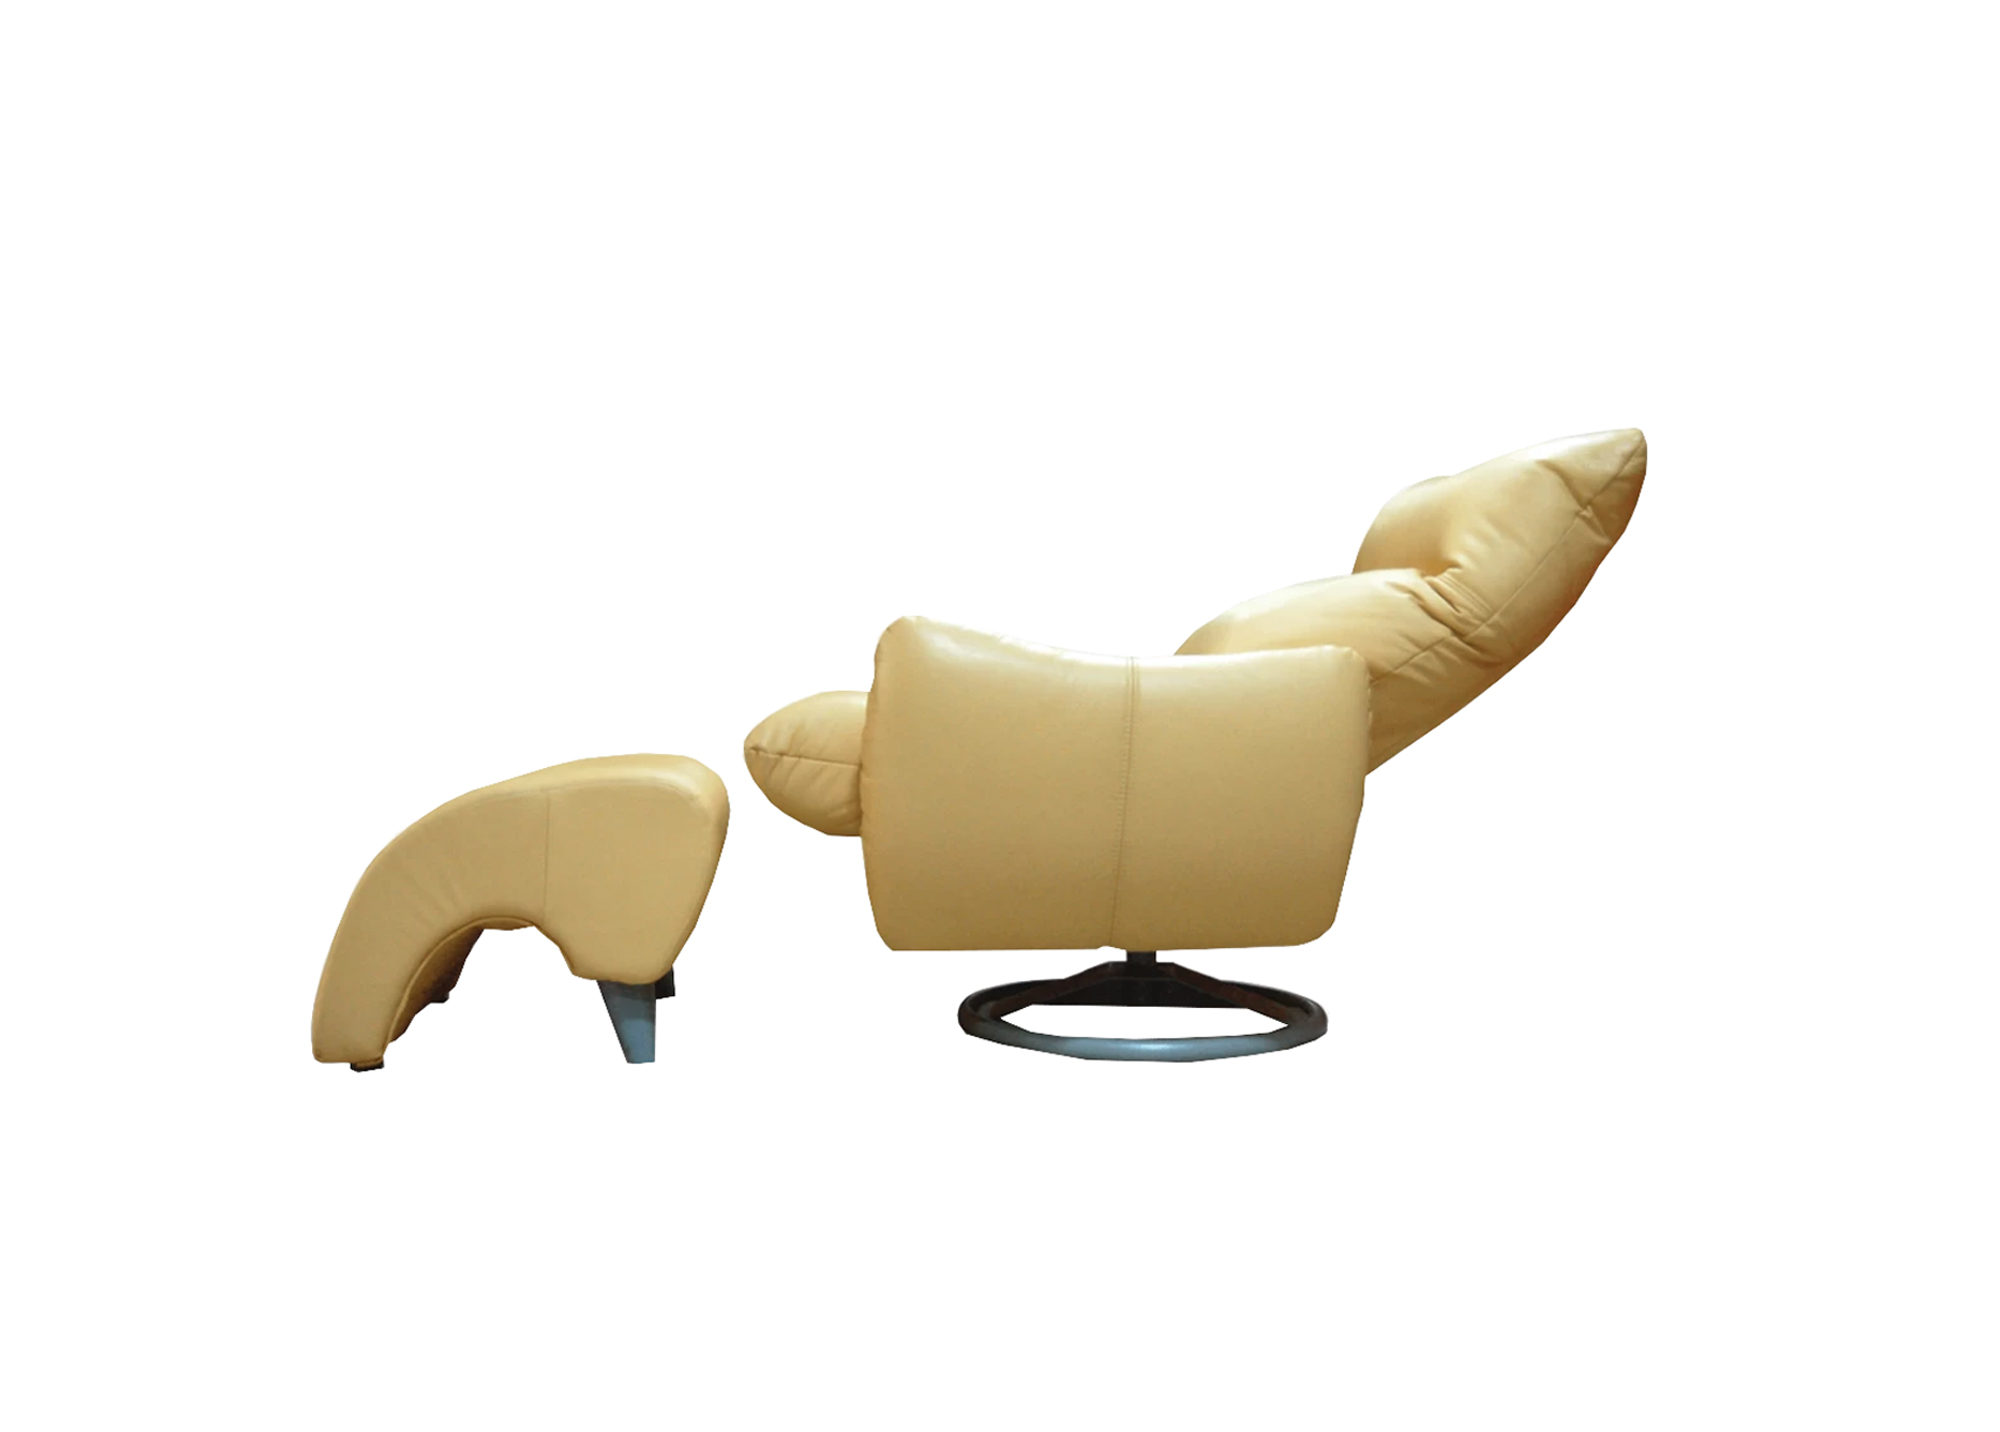 Svetainės baldai | MAGRĖS BALDAI minkštas patogus fotelis su poilsio mechanizmu svetainei, prieškambariui, biurui GRETA